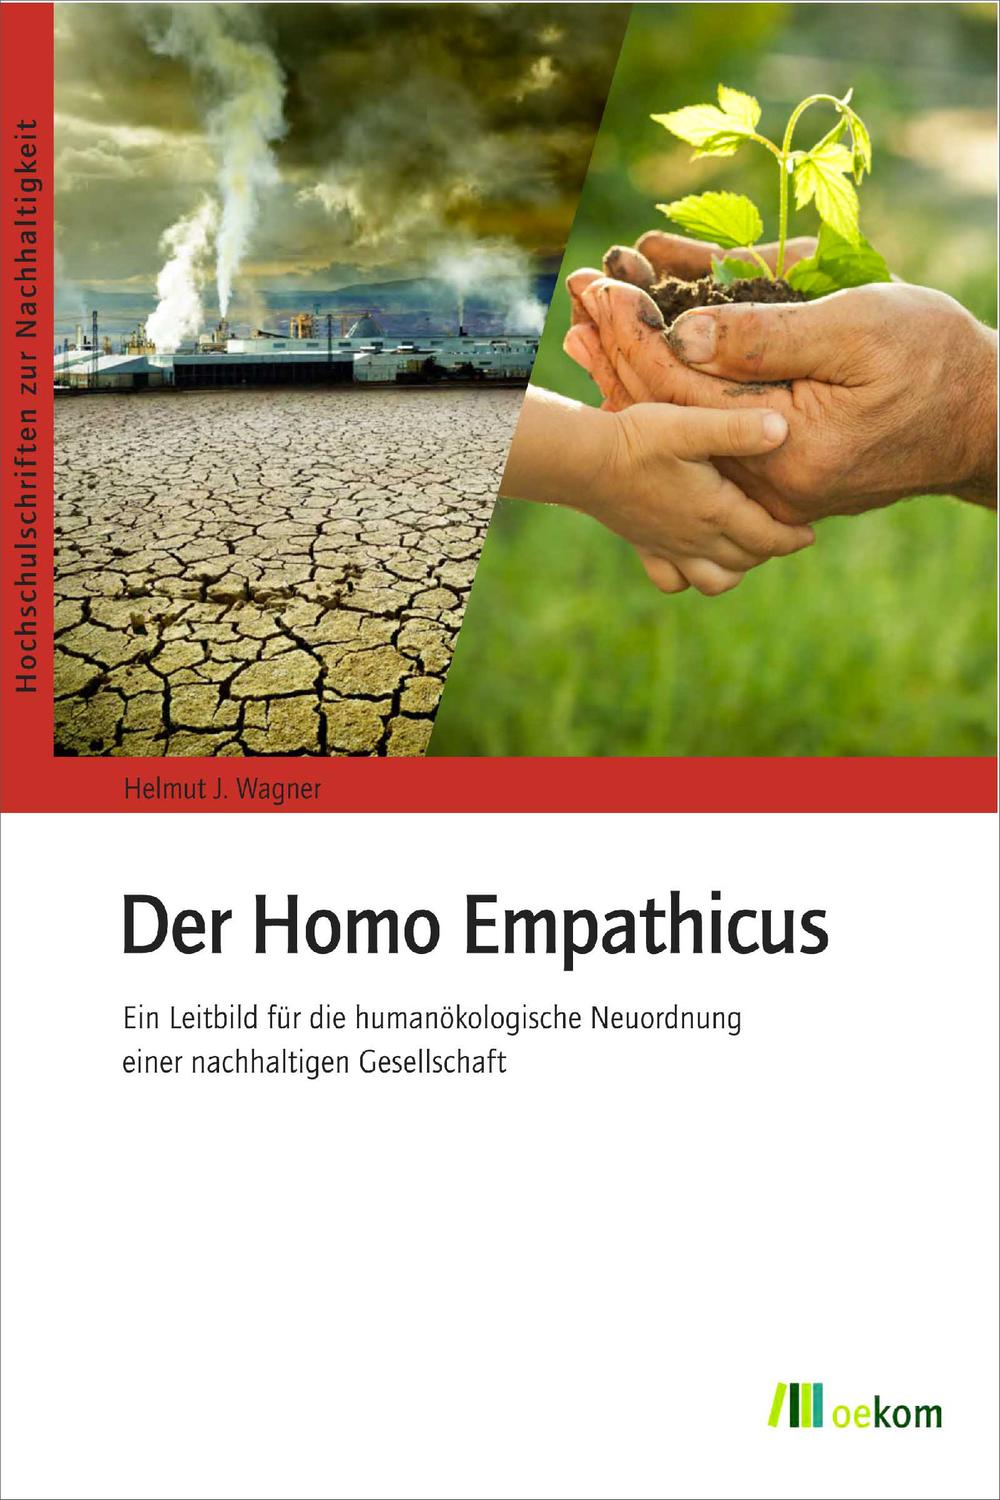 Der Homo Empathicus - Helmut J. Wagner